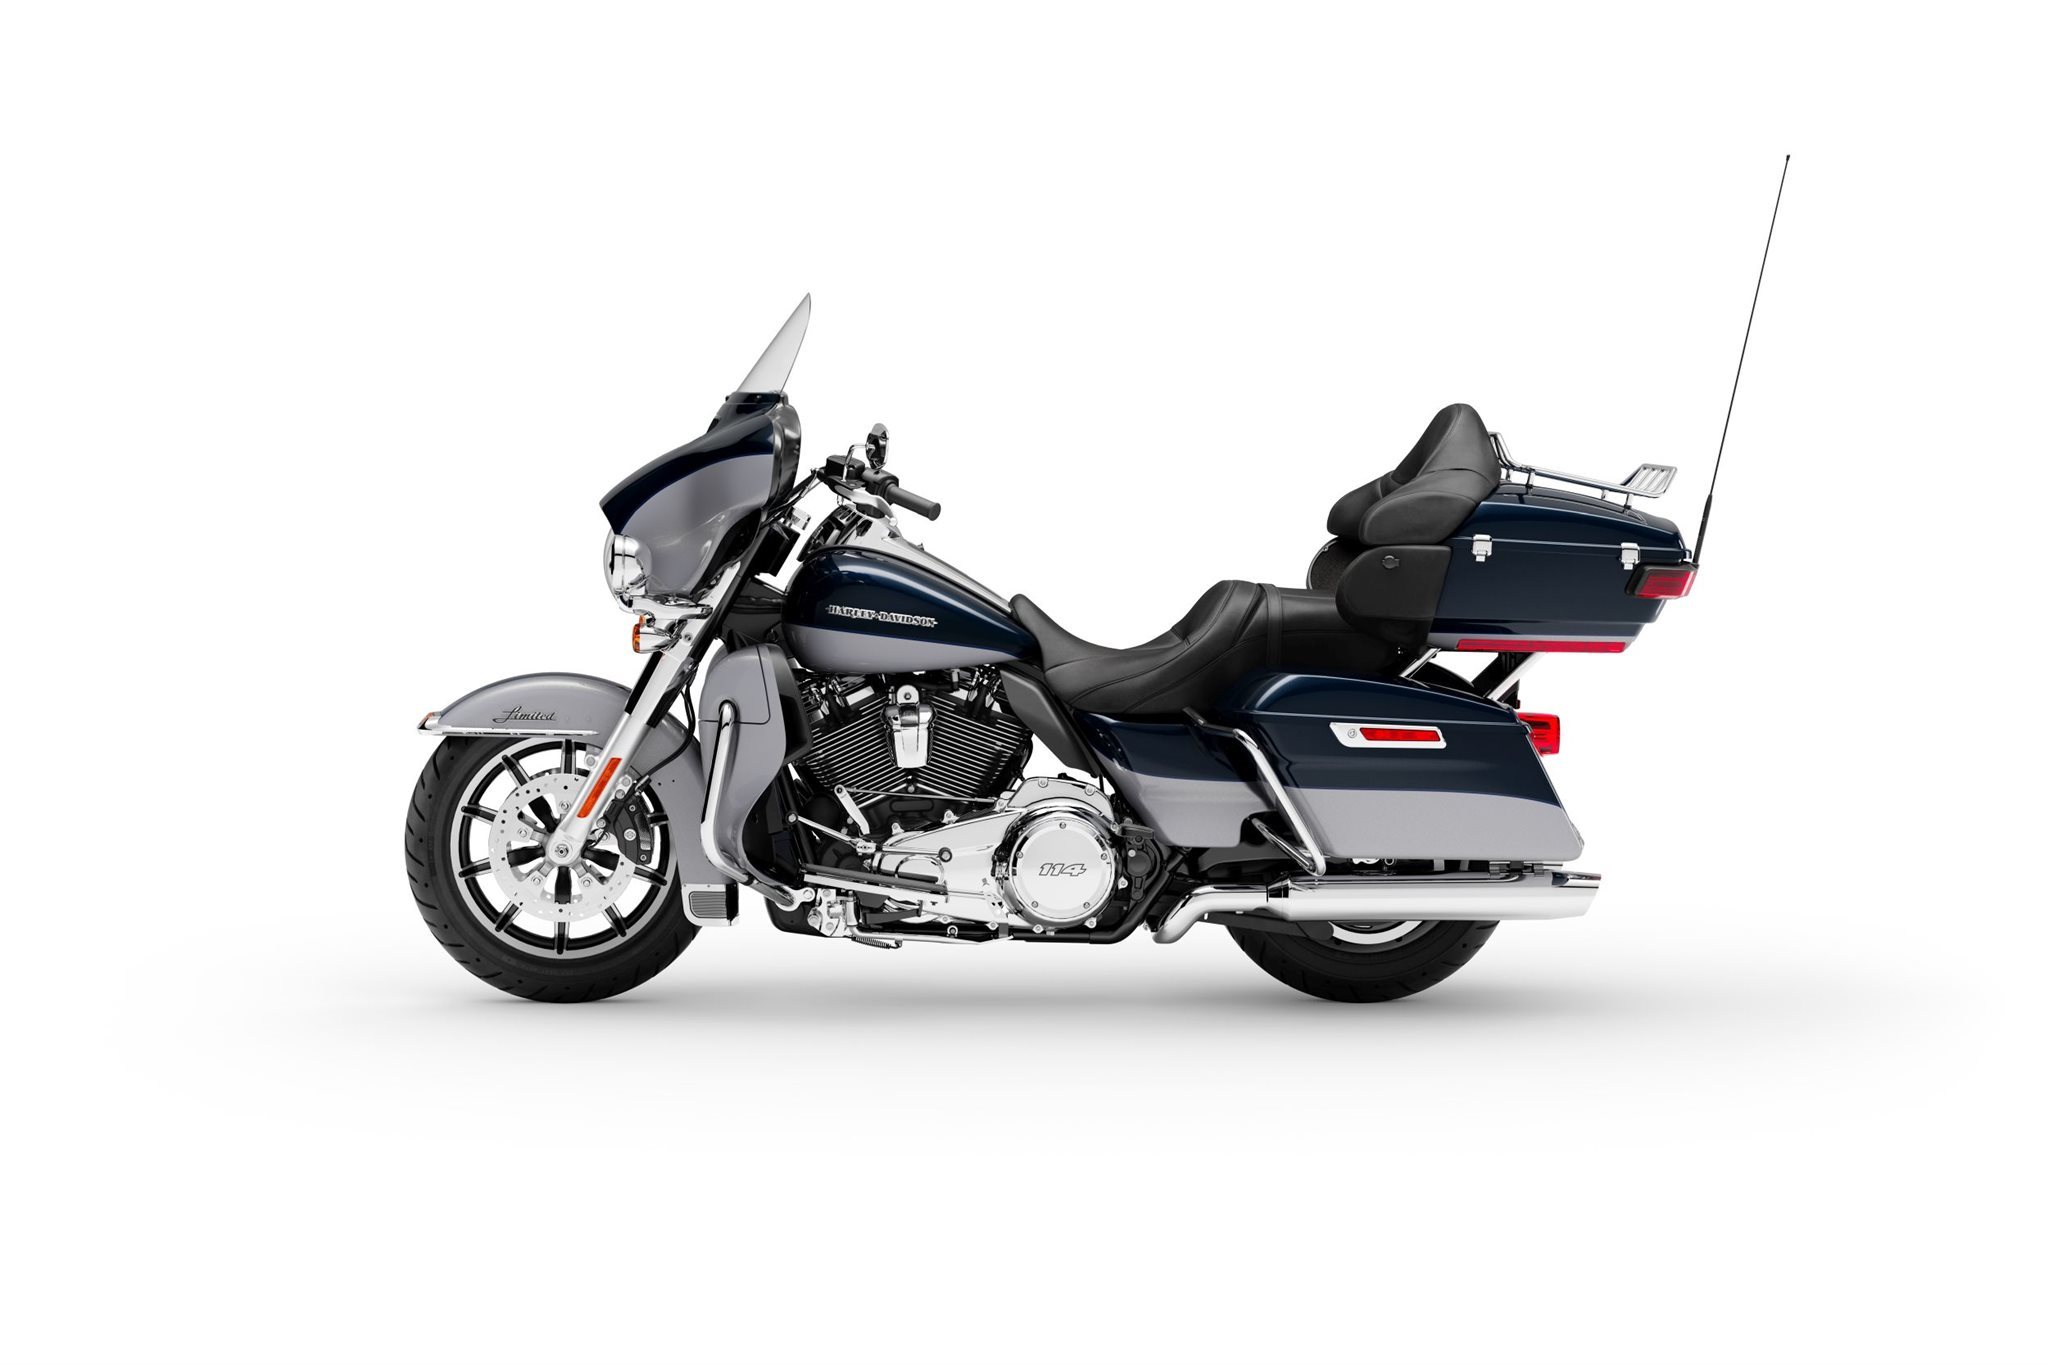 Motorrad Vergleich Harley Davidson Dyna Switchback Fld 2016 Vs Harley Davidson Electra Glide Ultra Limited Low Flhtkl 2020